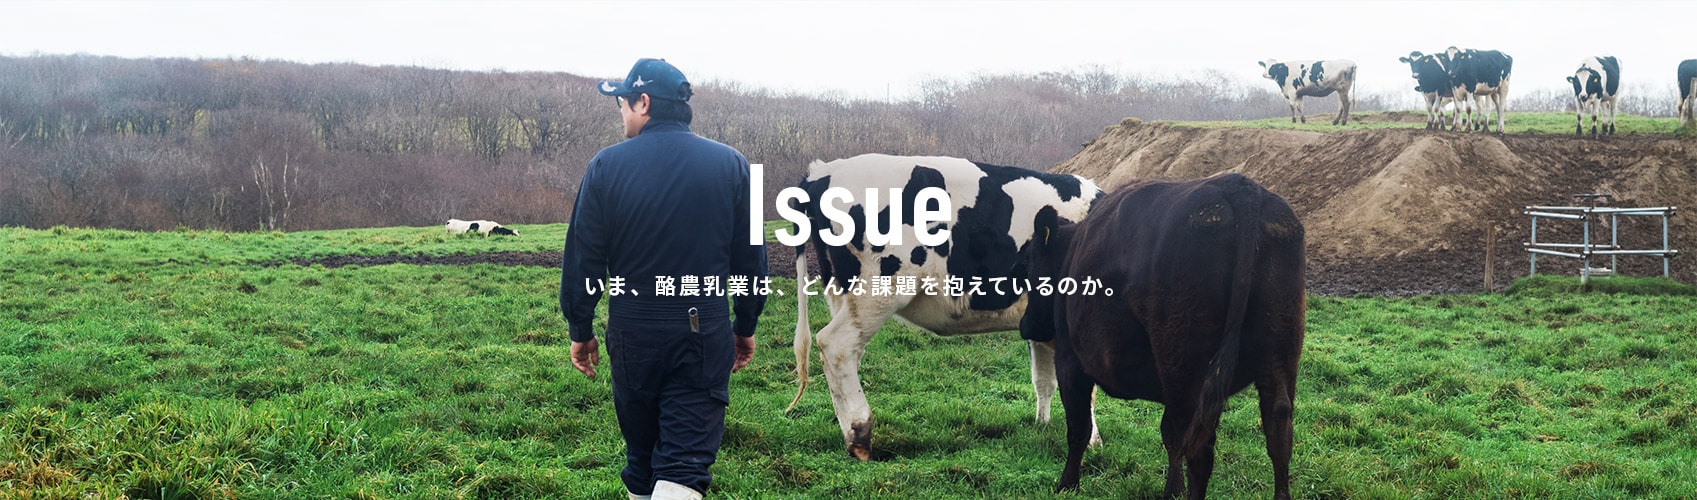 Issue いま、酪農乳業は、どんな課題を抱えているのか。